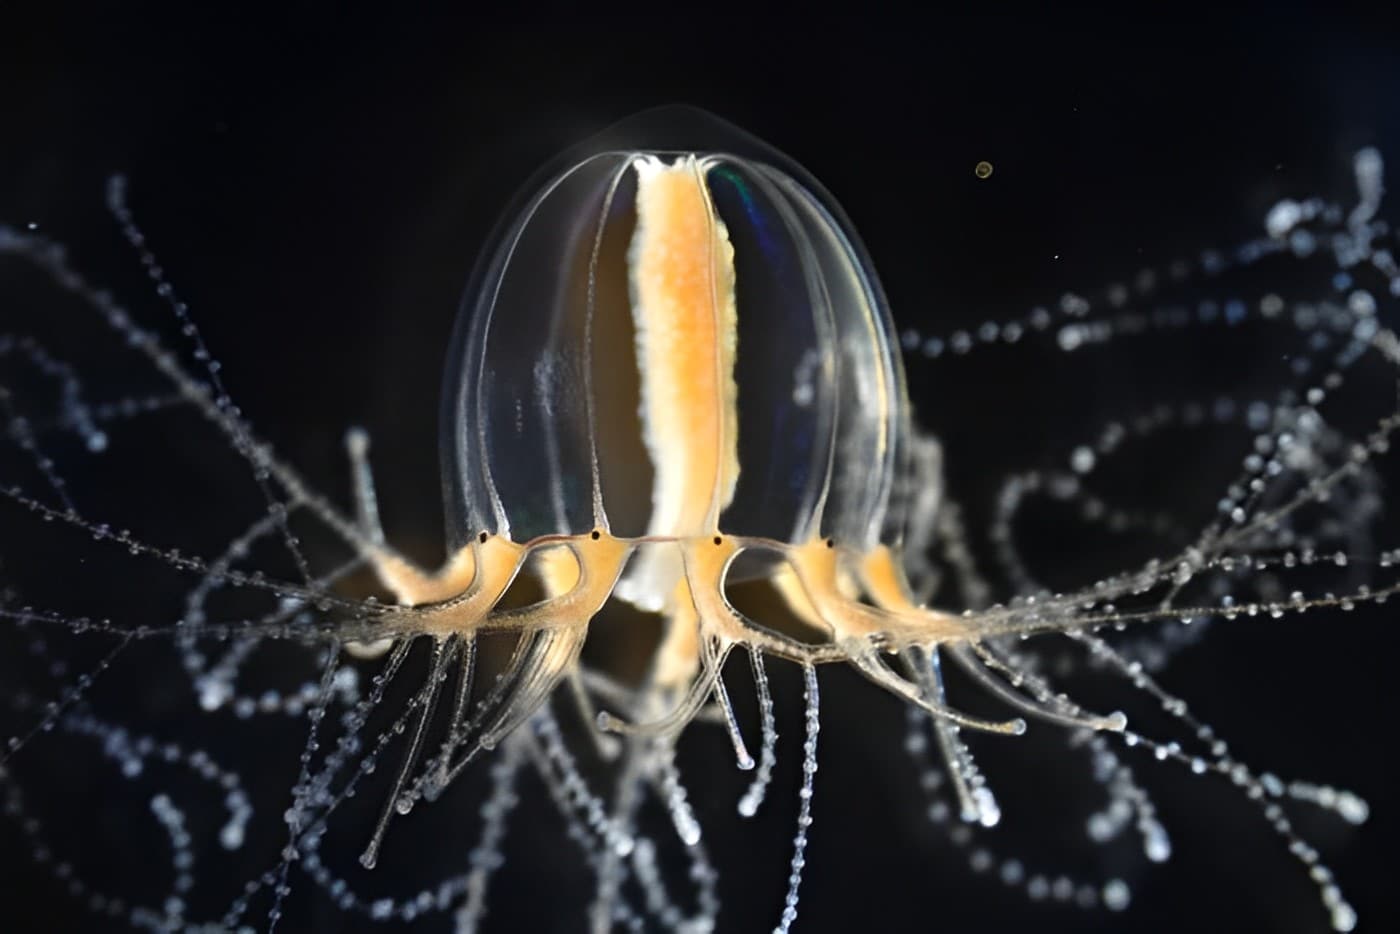 Медузы восстанавливают функциональные щупальца за несколько дней: исследование